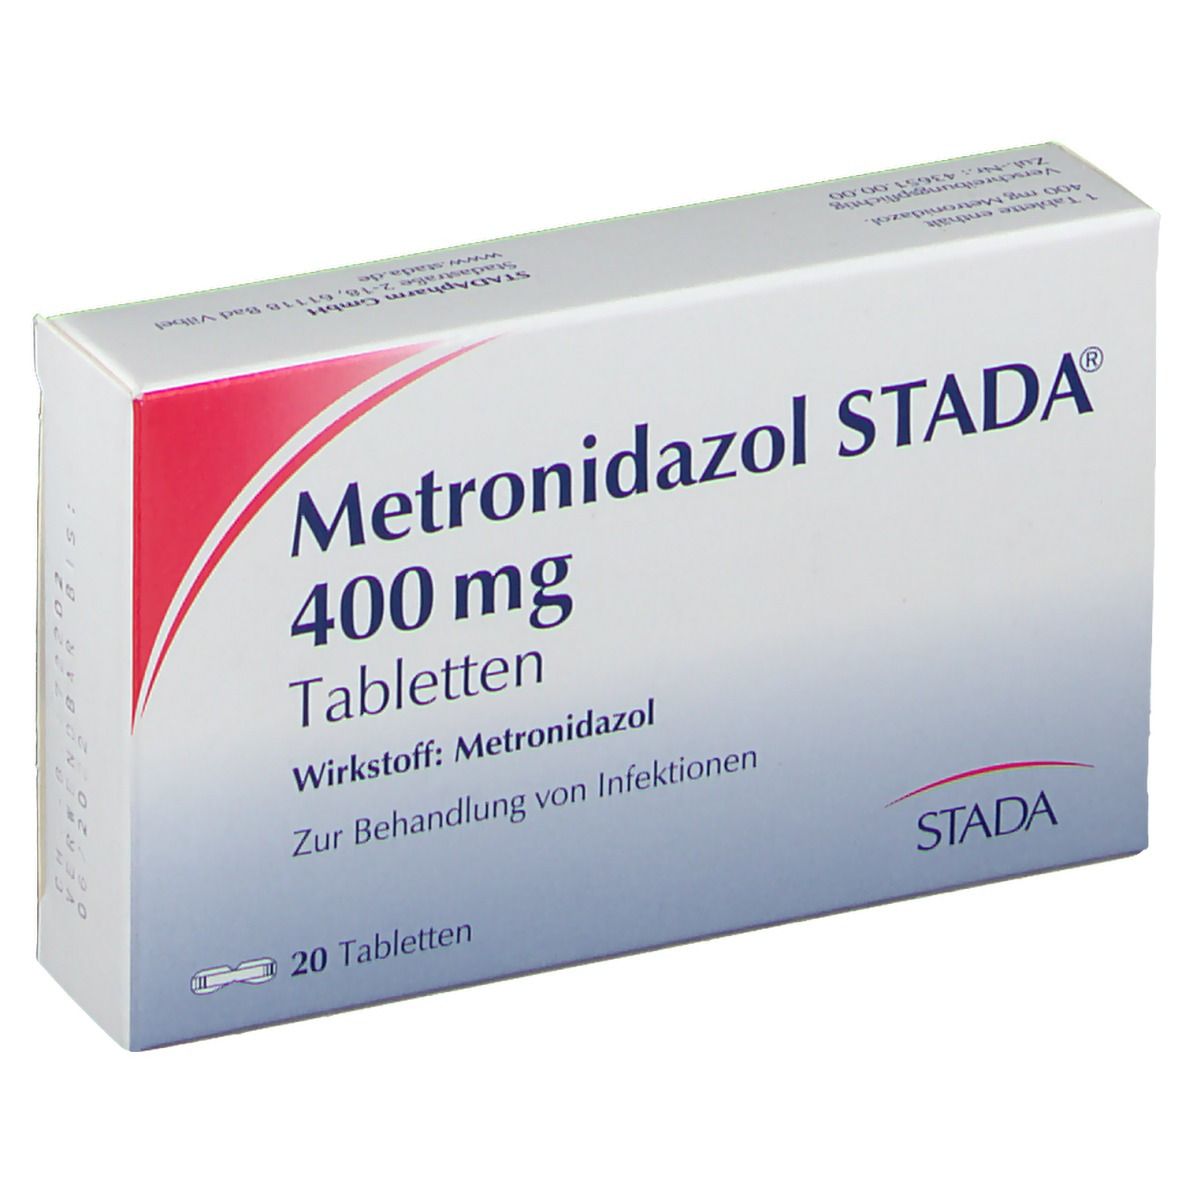 Метронидазол таблетки для мужчин. Метронидазол 400 мг. Метронидазол импортный. Метронидазол импортный производитель. Метронидазол таблетки хакида.